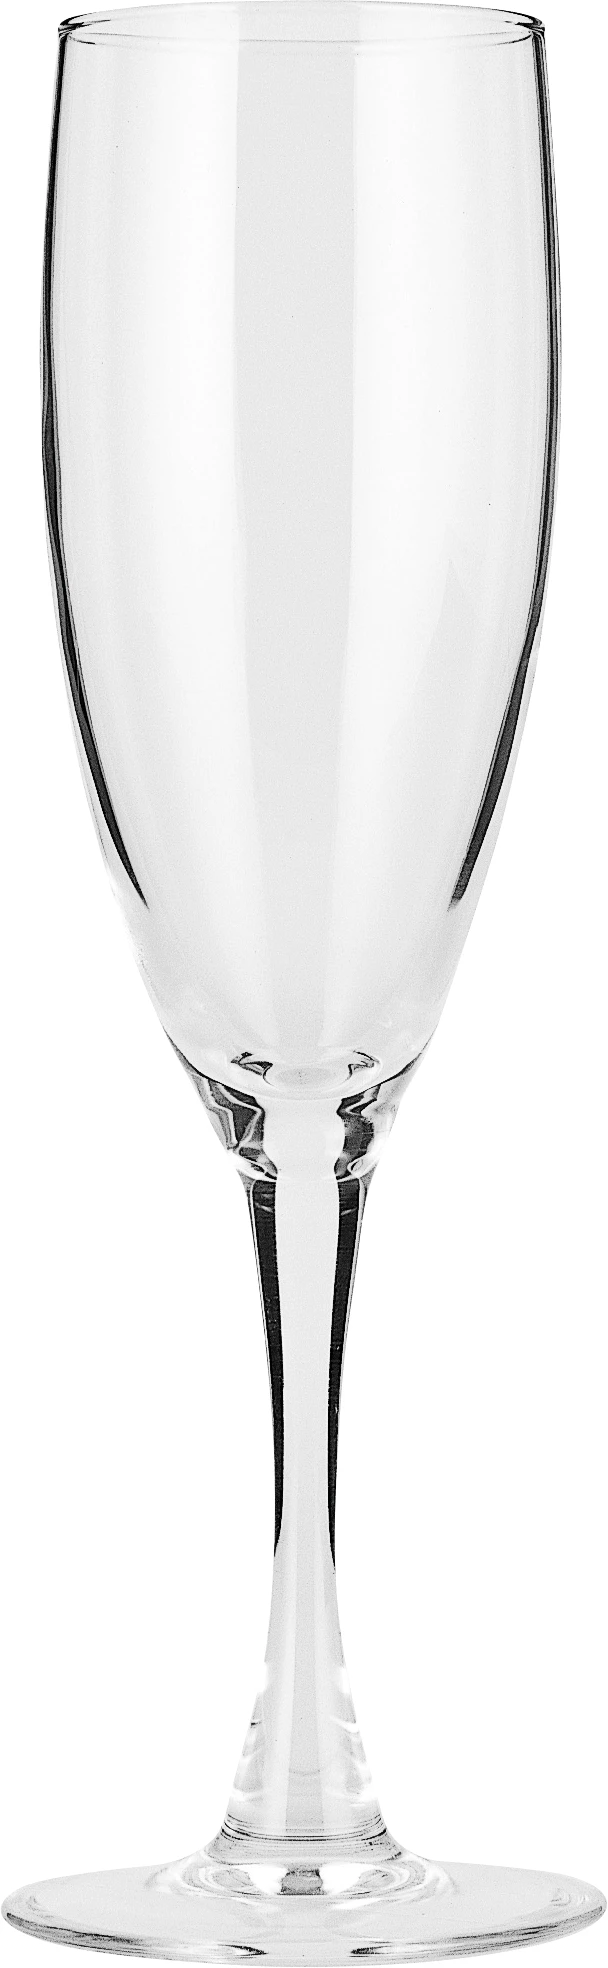 Arcoroc Princesa champagneglas, 15 cl, H19,5 cm